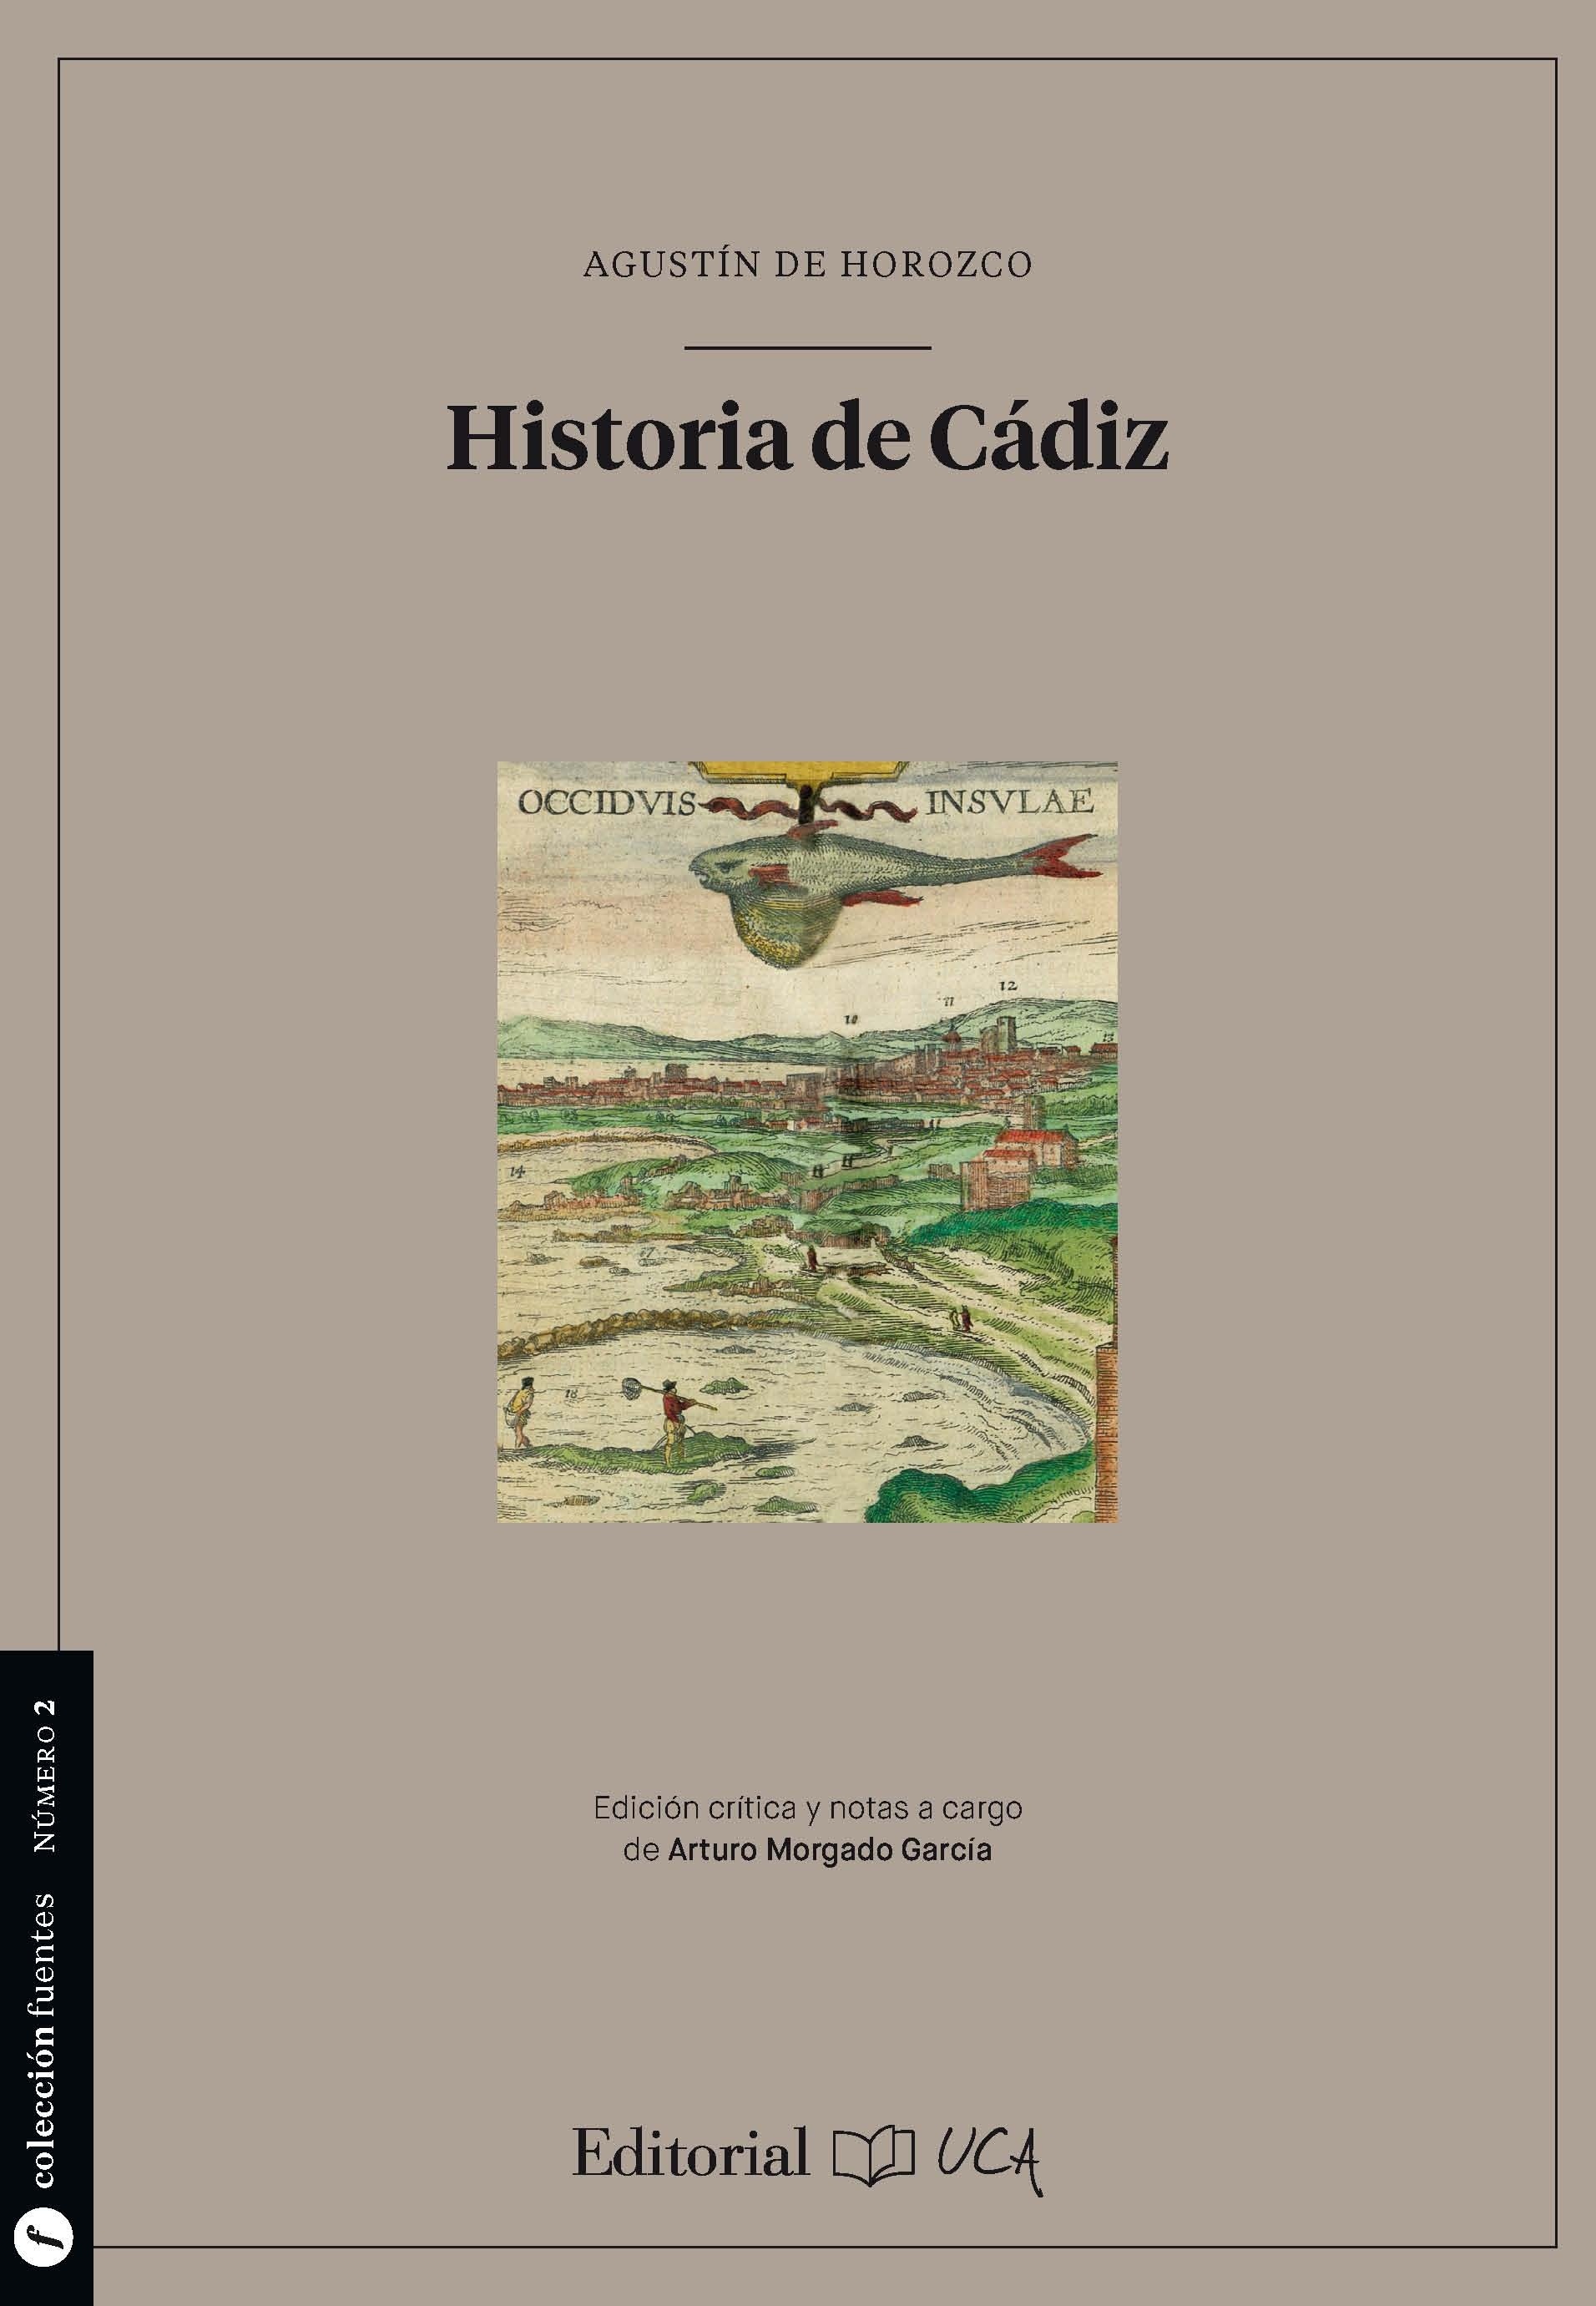 Historia de Cádiz "Texto de las versiones de 1591 y 1598"